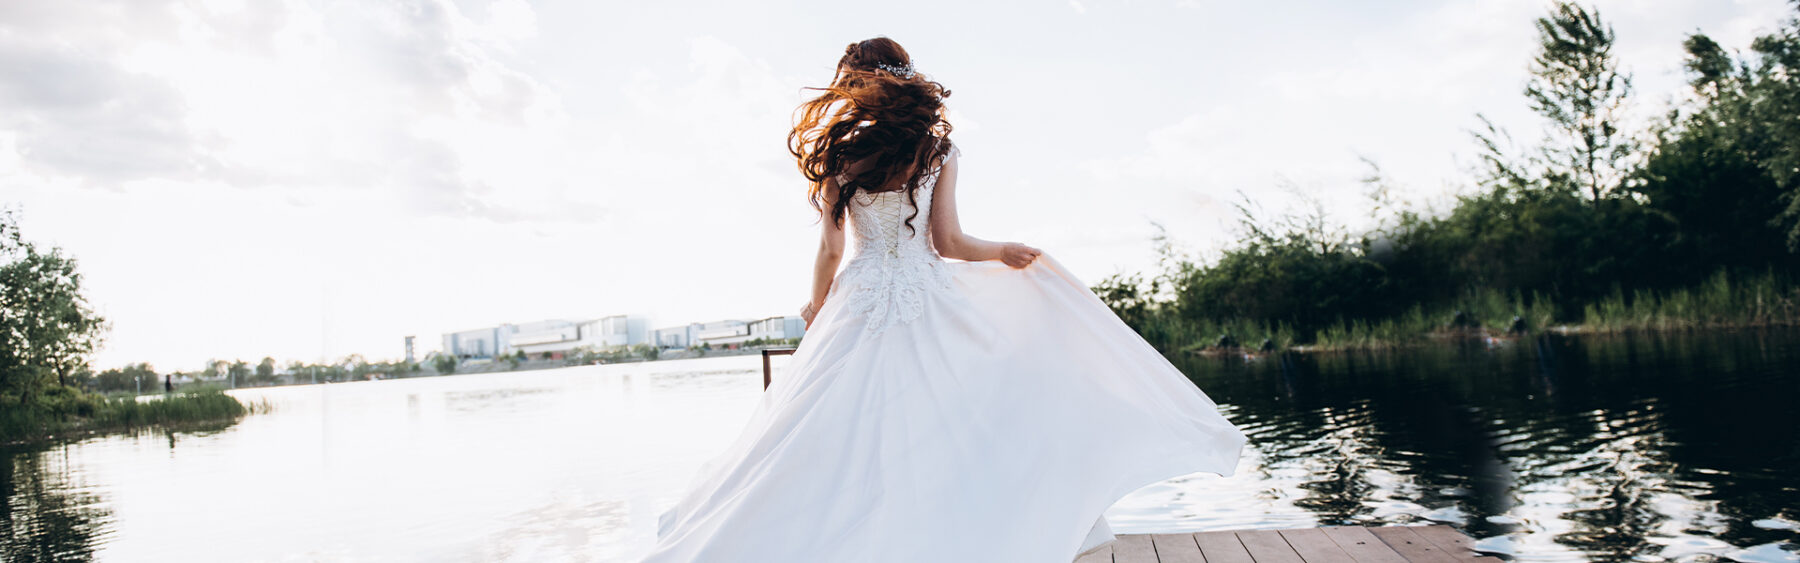 Woman Twirling in Beautiful Wedding Dress